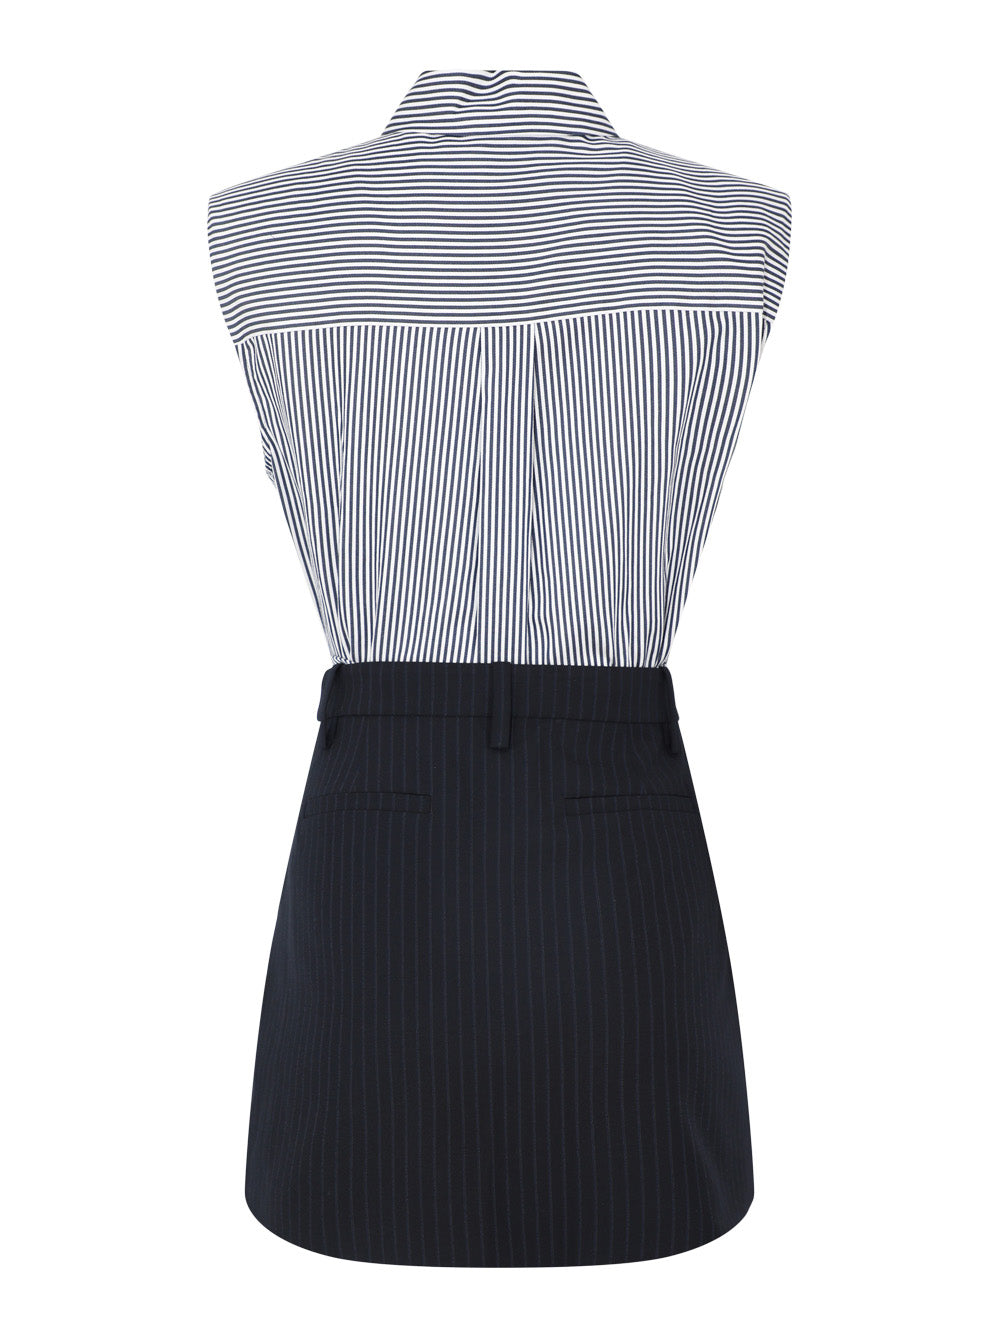 Simkhai Graham Sleeveless Shirting Combo Mini Dress in Midnight Pinstripe Multi